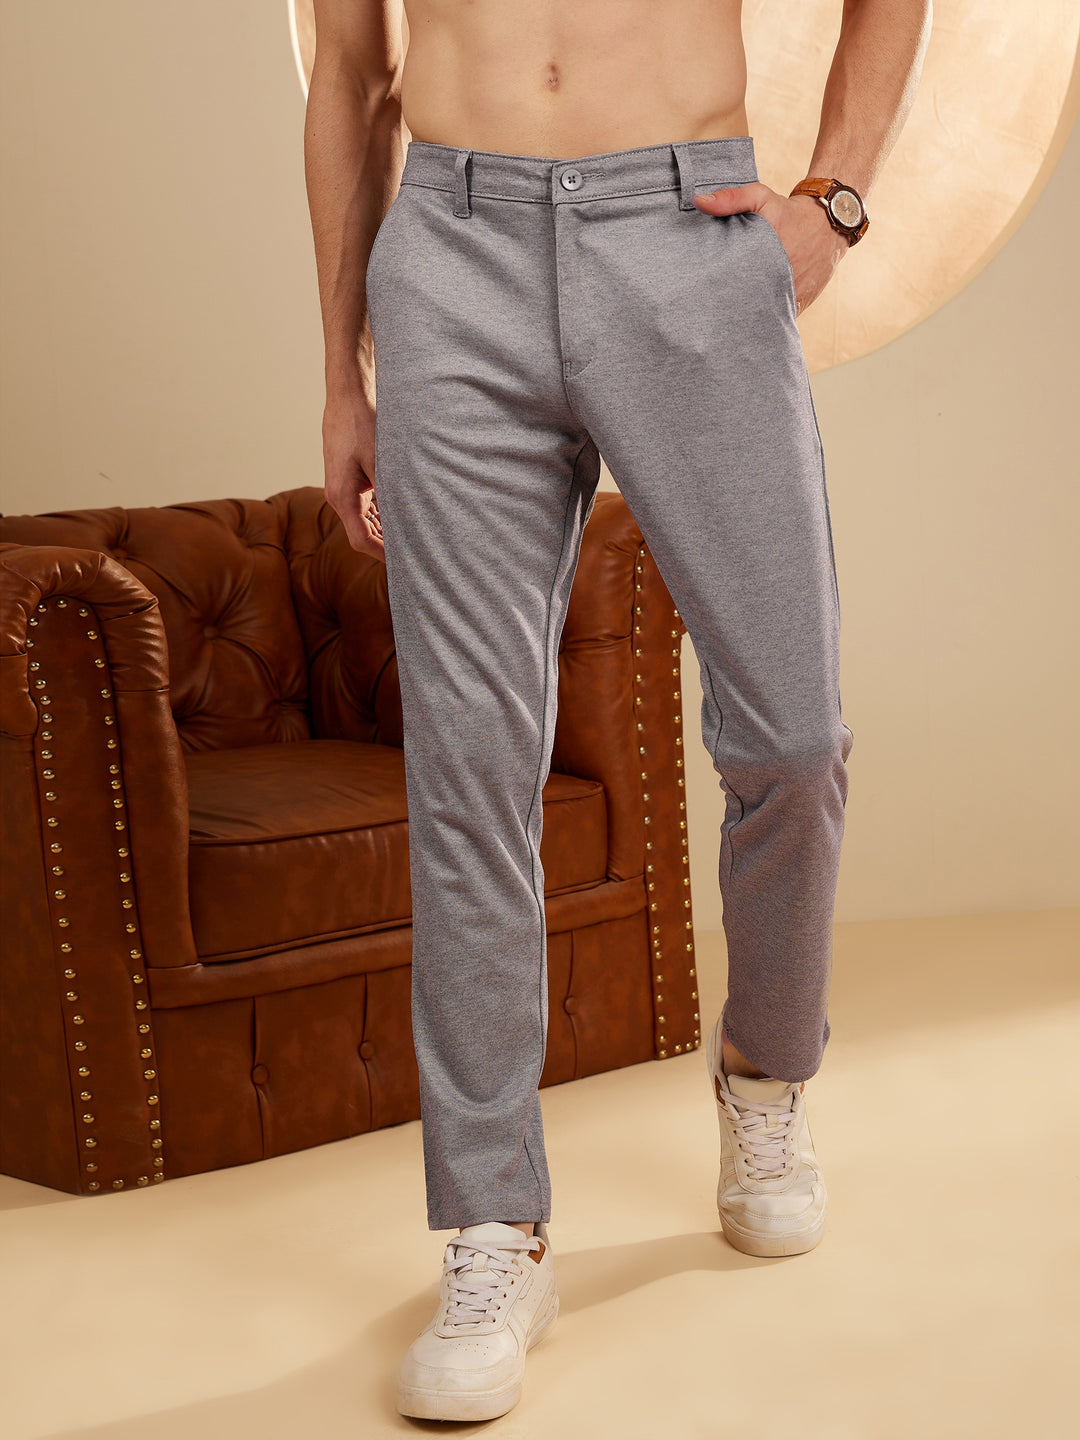 DENNISON Bluish Grey 4-Way Lycra Trouser